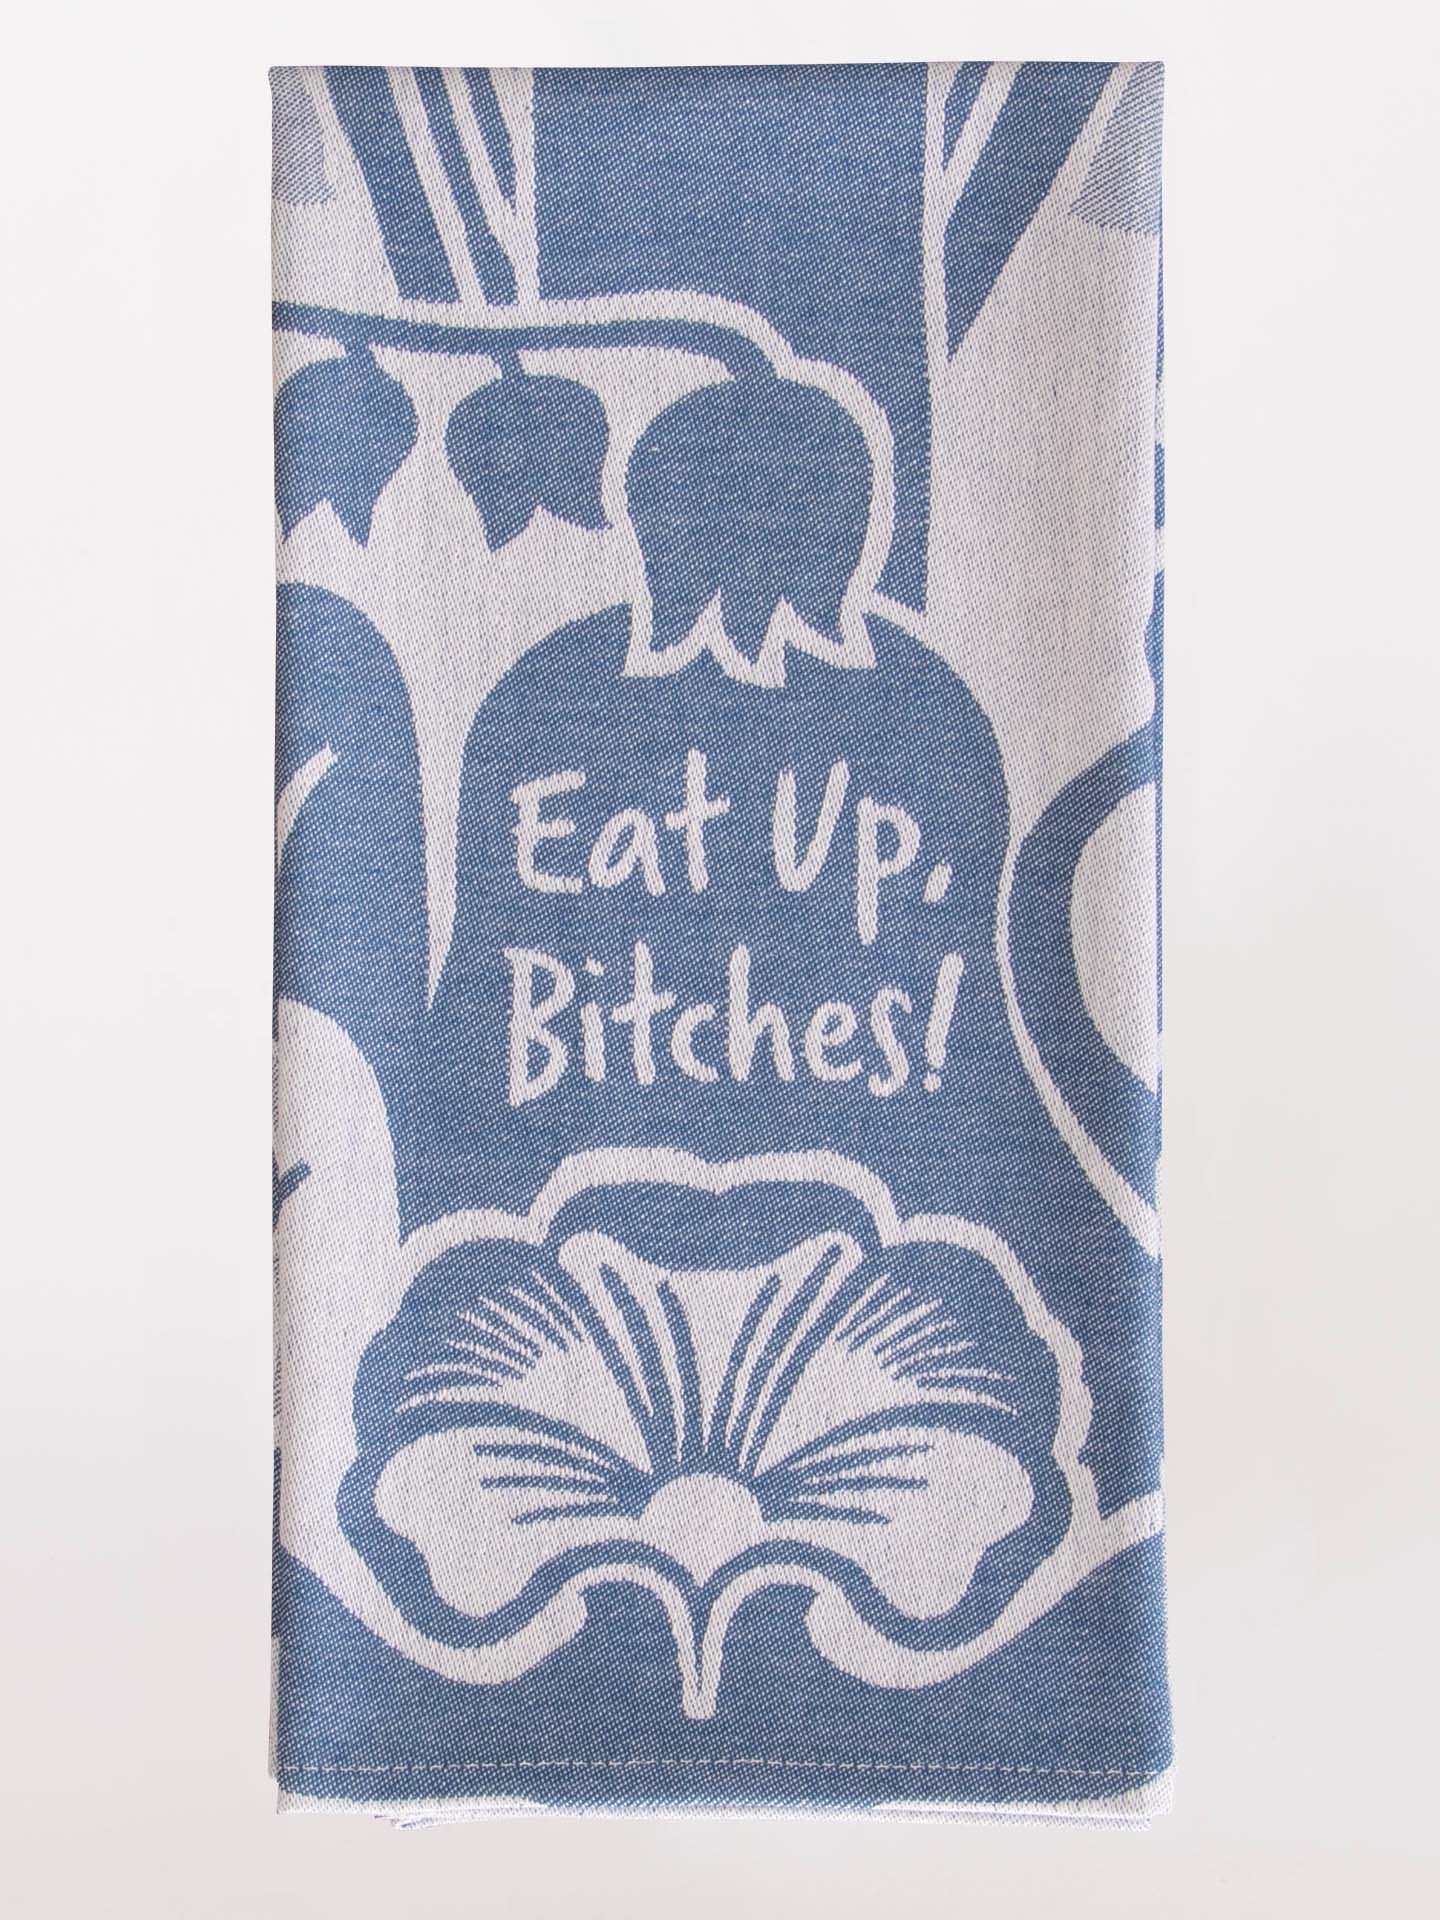 Blue Q Eat Up Bitches Tea Towel